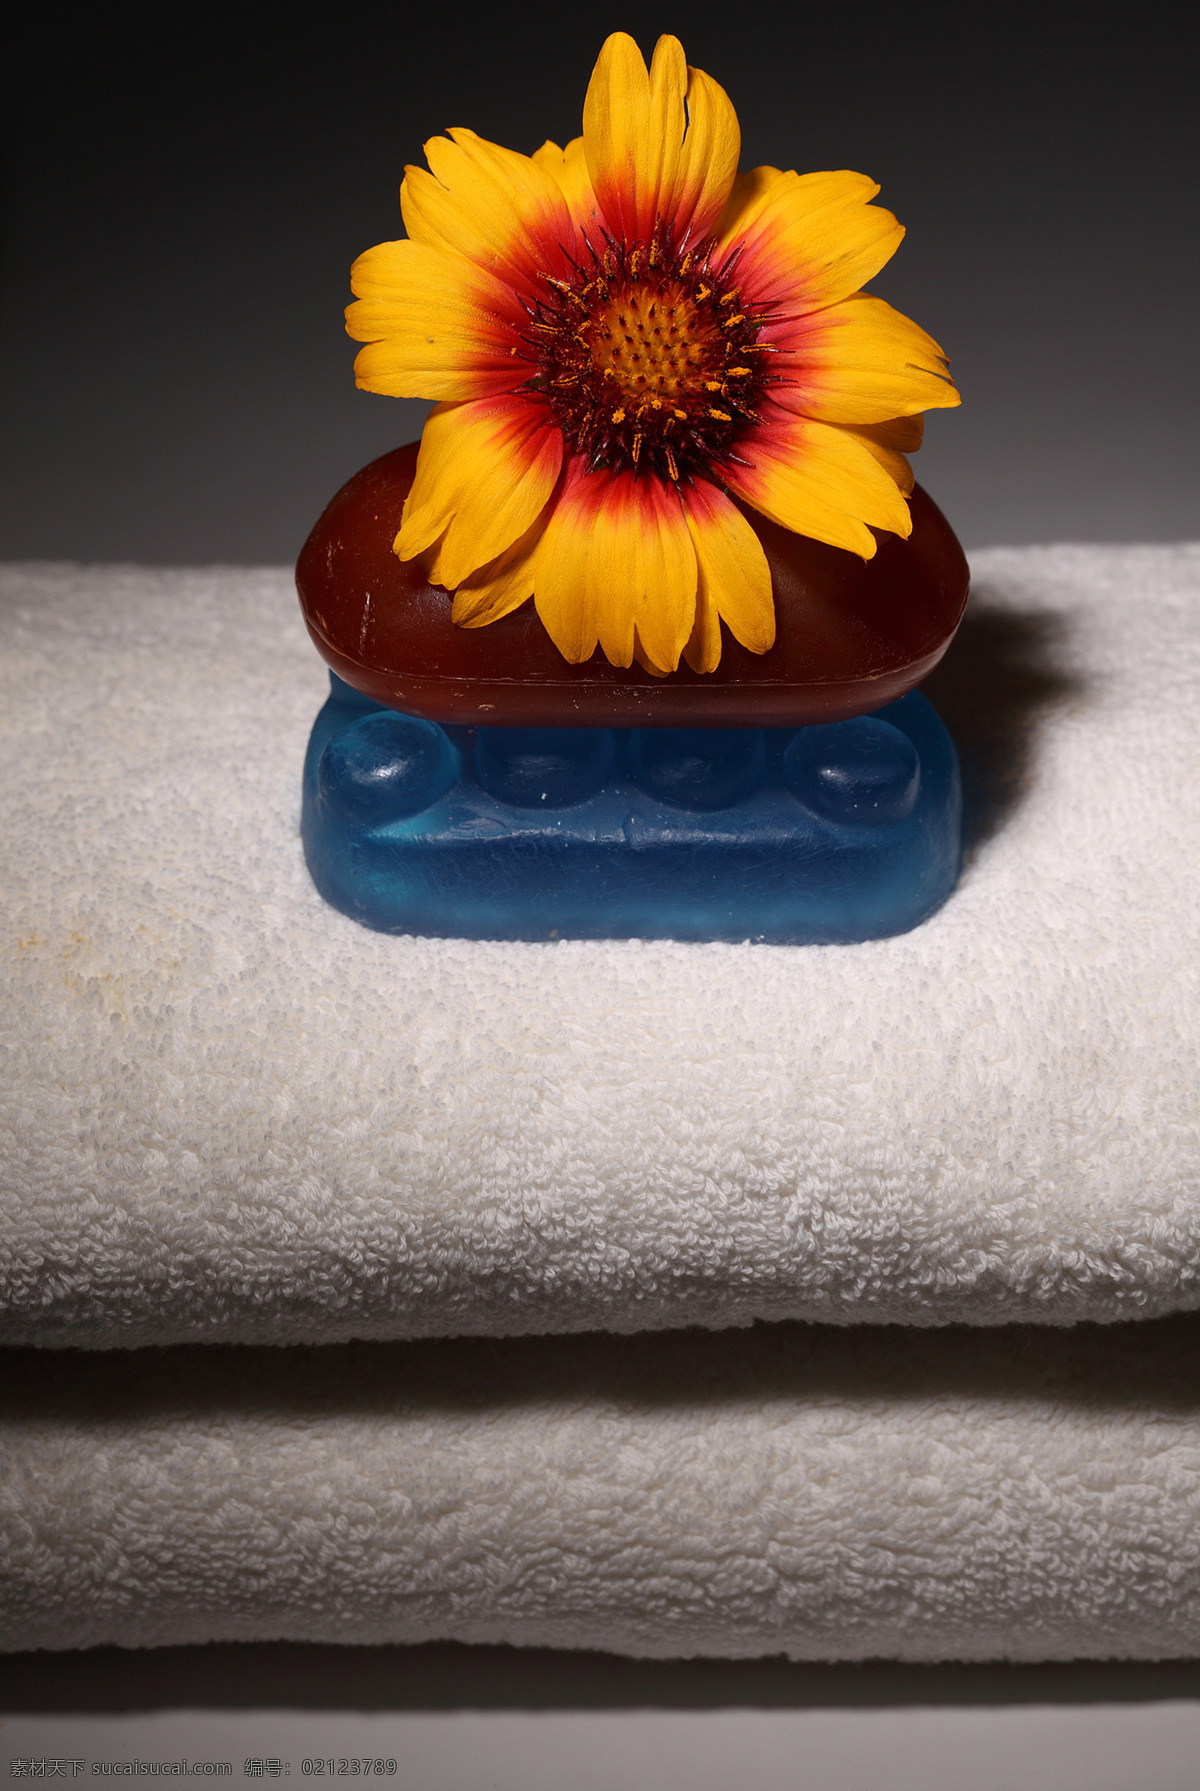 毛巾 石头 美容用品 向日葵 花朵 护肤品 spa用品 生活用品 生活百科 黑色